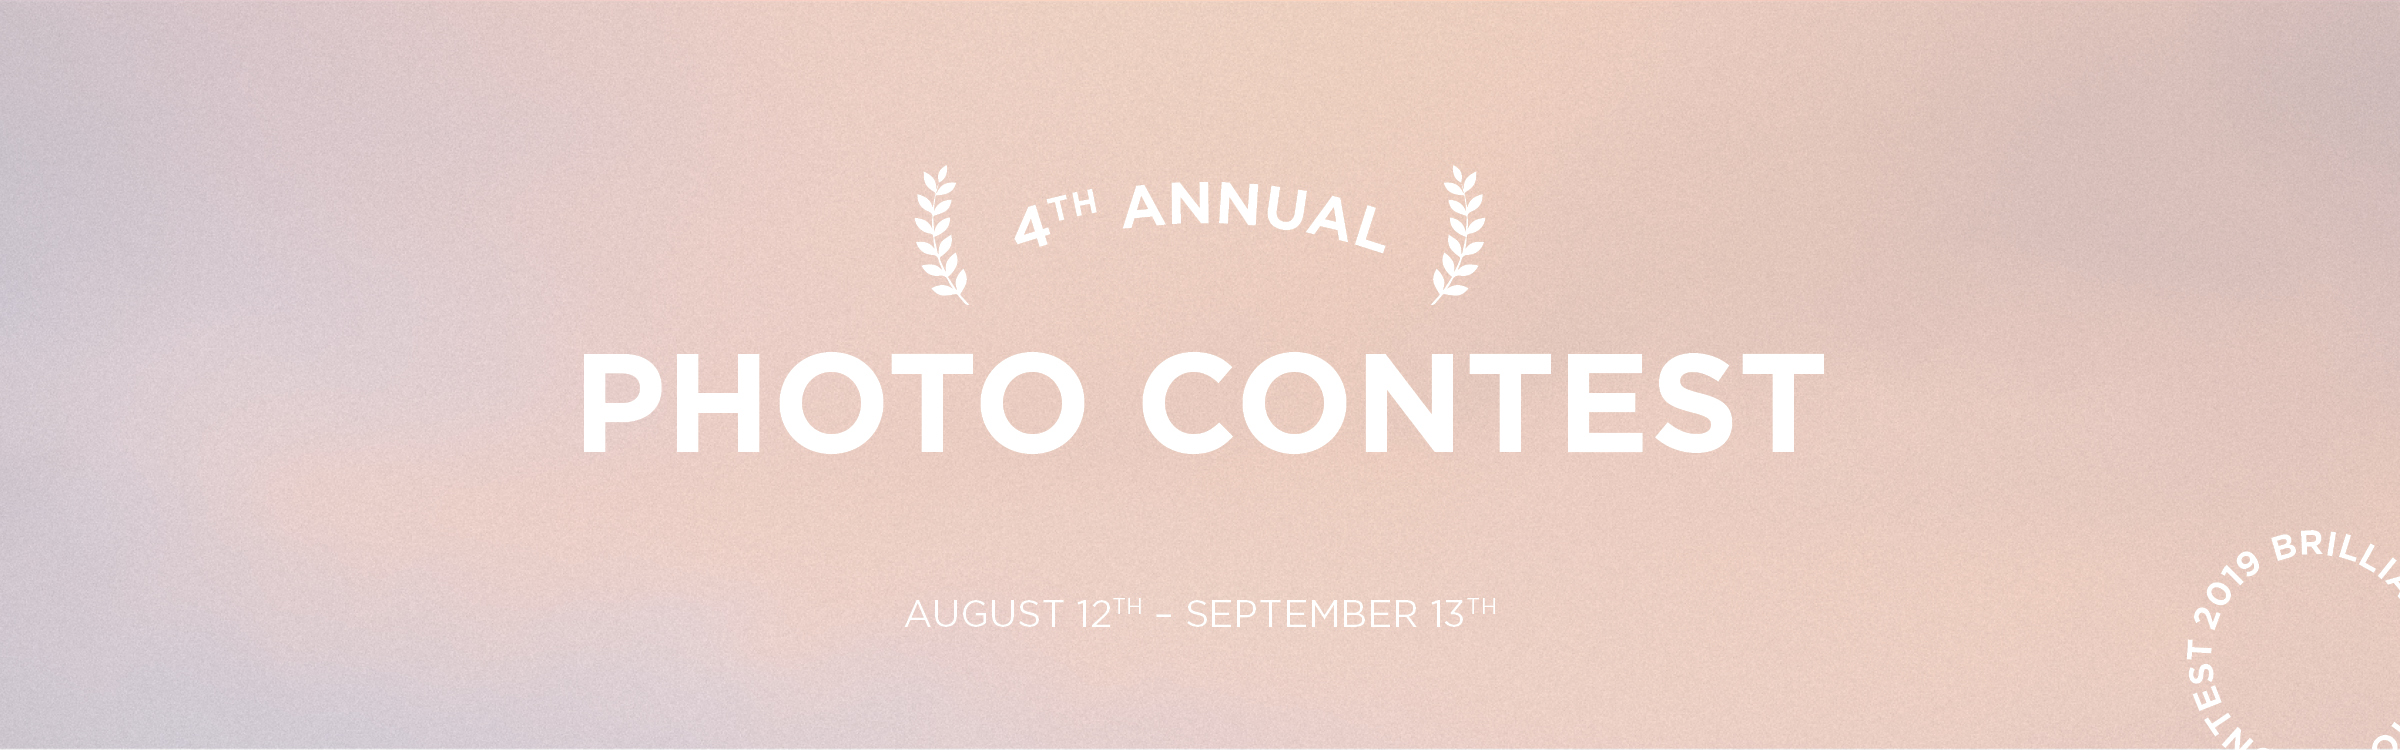 Photo Contest Header2.jpg